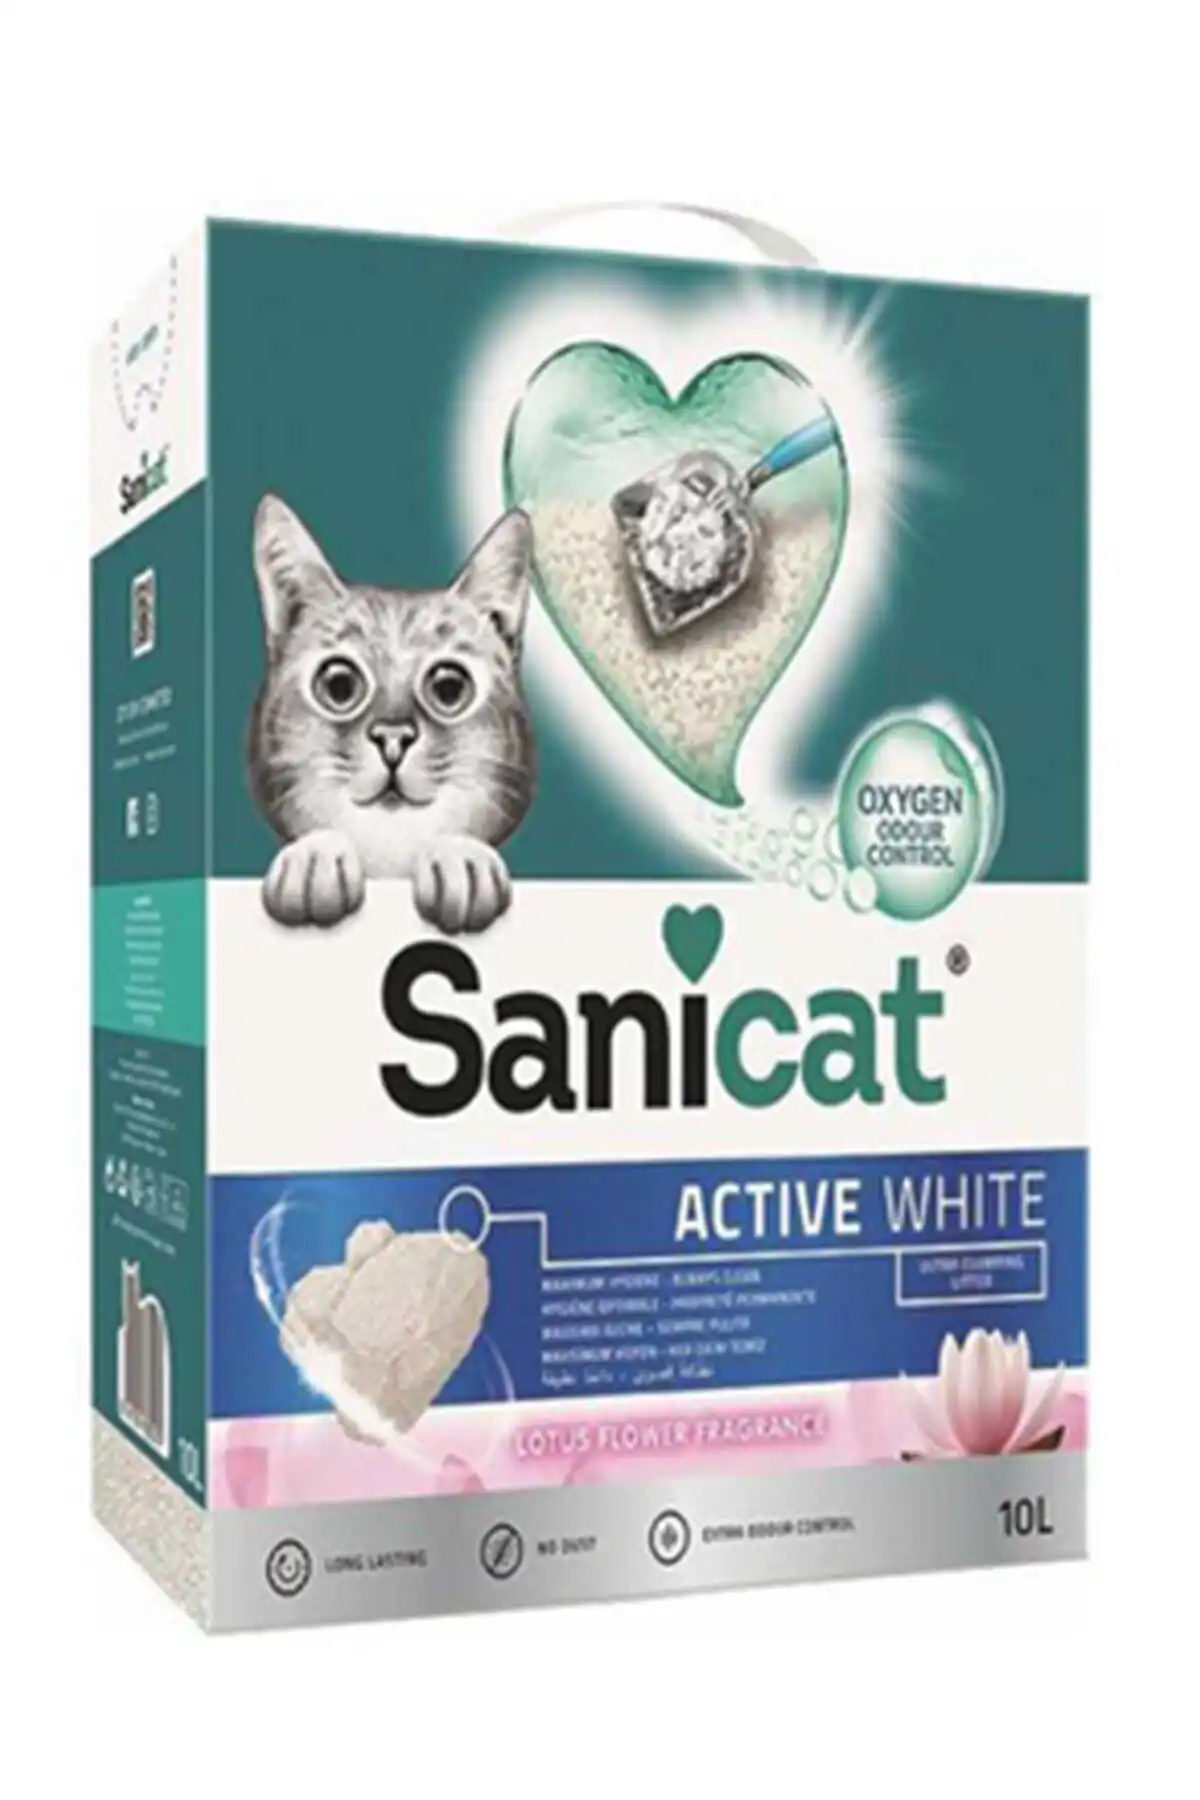 SANICAT - Sanicat Active White Oksijen Kontrollü Koku Emici Lotus Çiçeği Kokulu Ultra Topaklanan Kedi Kumu 10lt